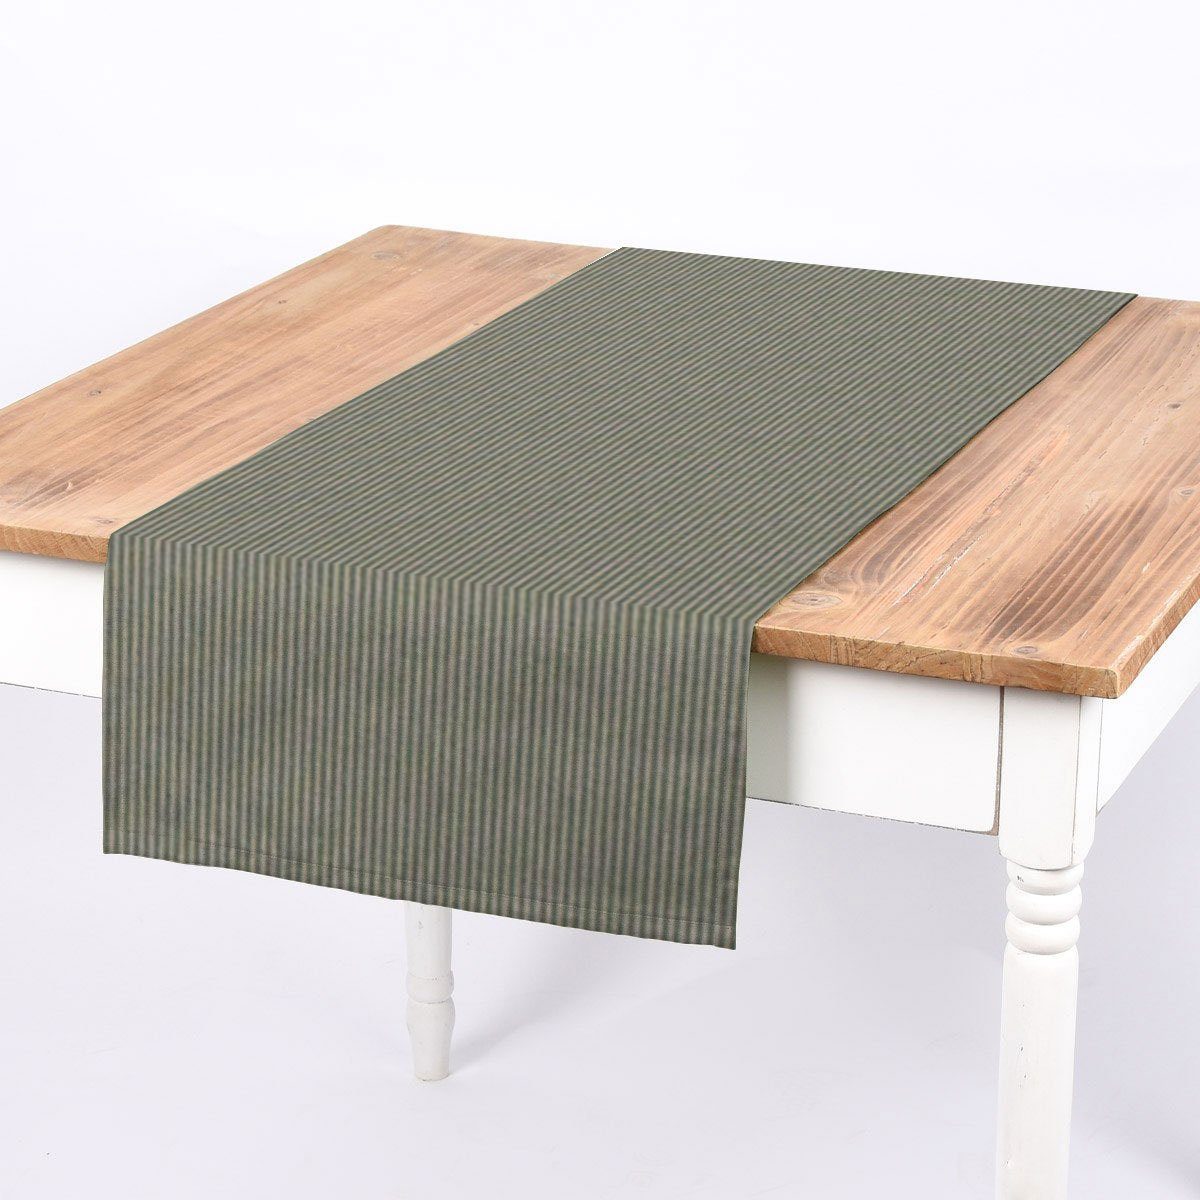 SCHÖNER LEBEN. Tischläufer SCHÖNER LEBEN. Tischläufer Streifen 3mm beige mintgrün 40x160cm, handmade | Tischläufer